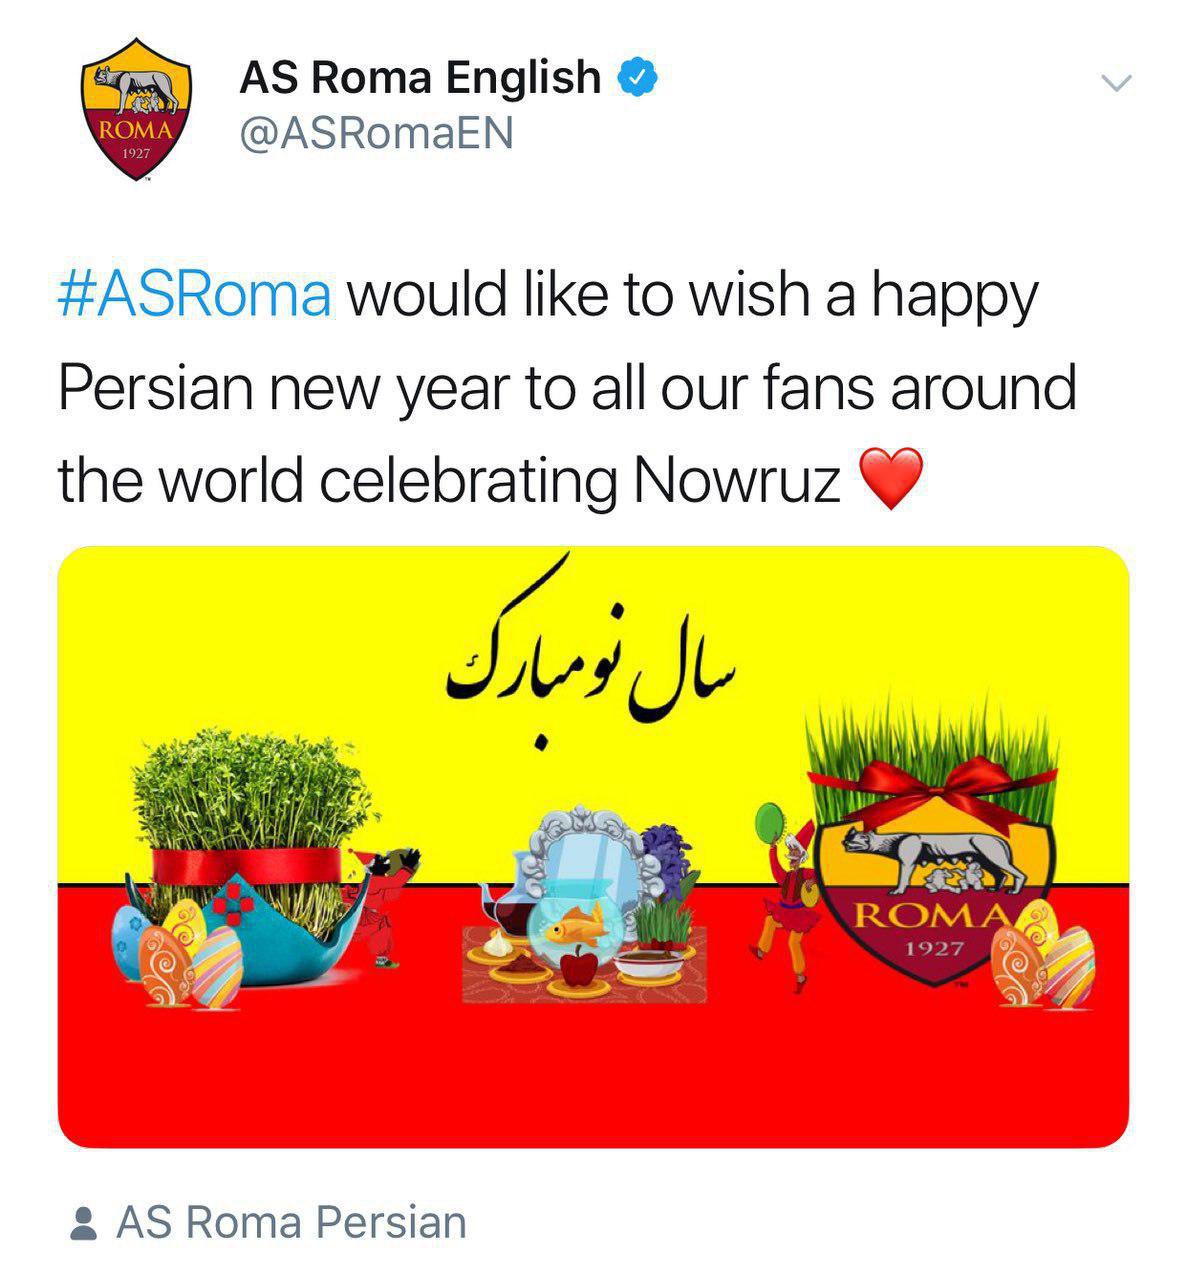 تبریک توییتر رسمی باشگاه رم به مناسبت نوروز باستانی